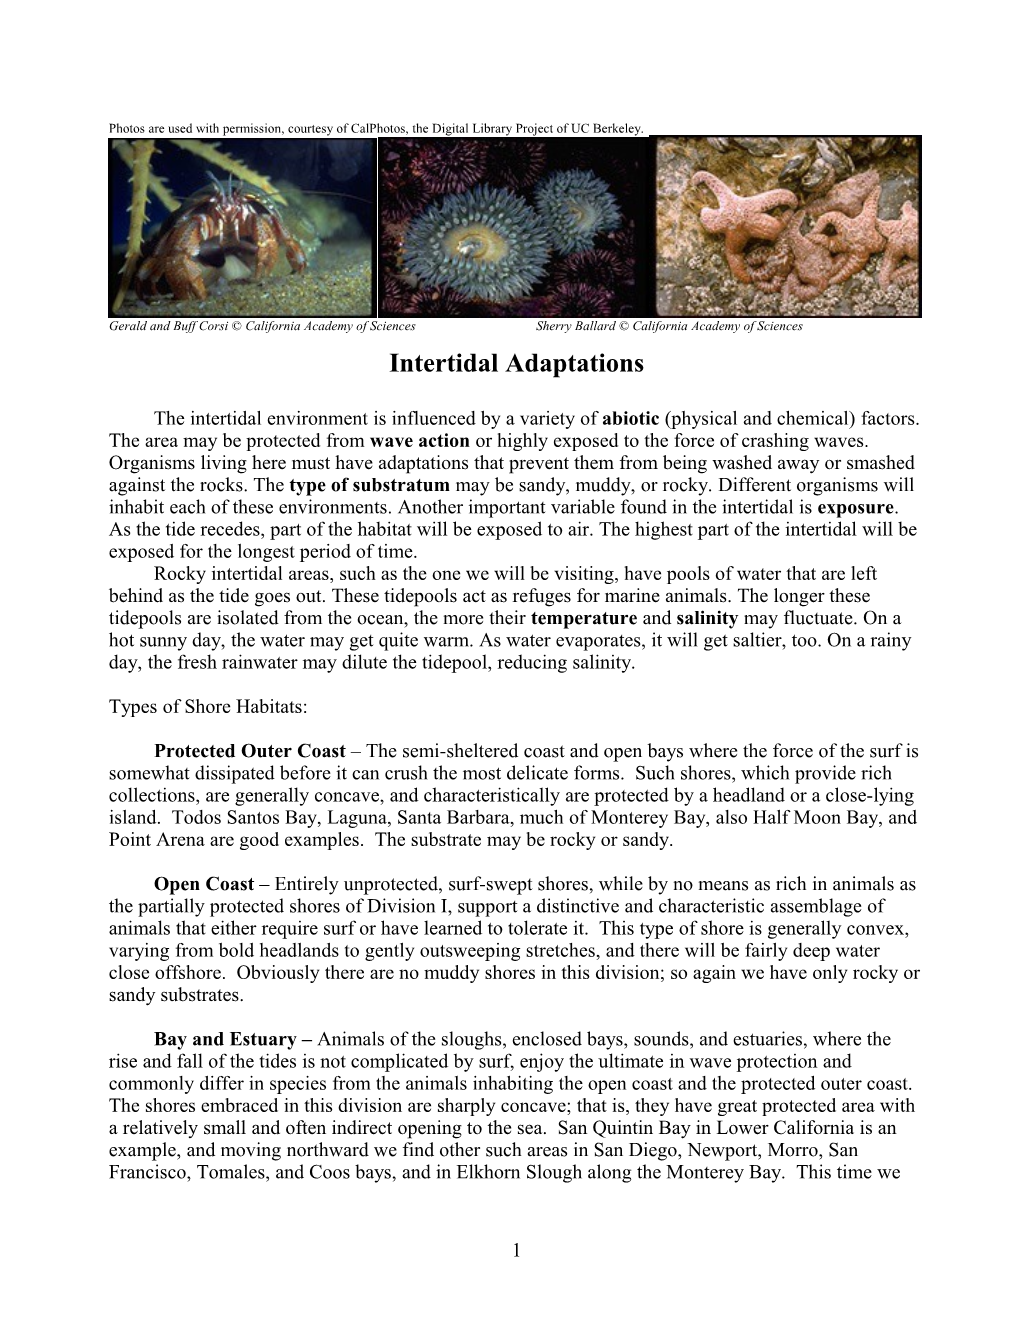 Intertidal Adaptations: A Qualitative Description Of Life Between Tides